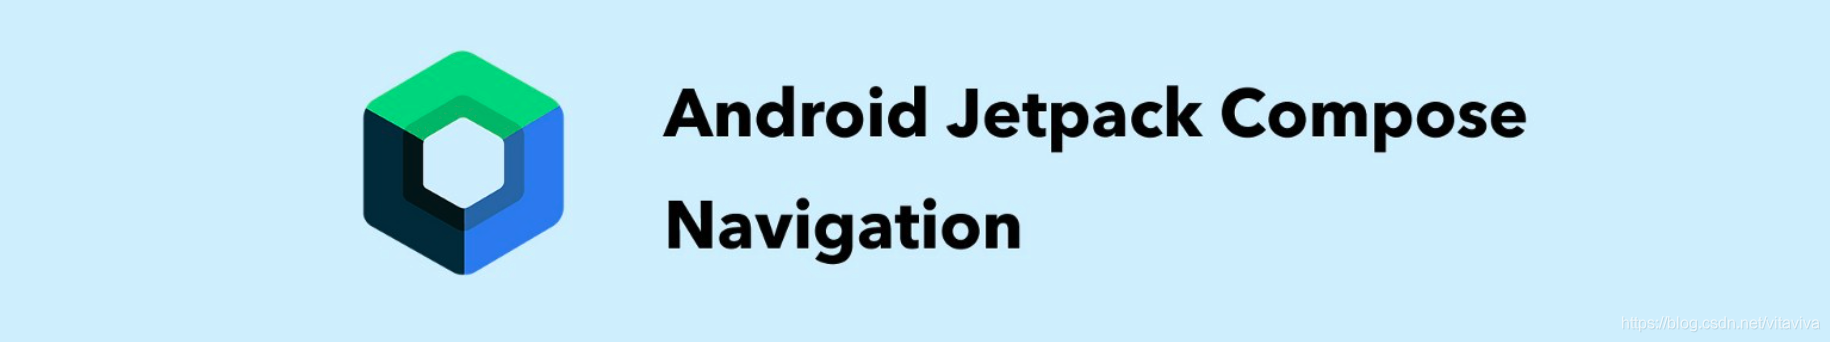 Jetpack Navigation For Compose